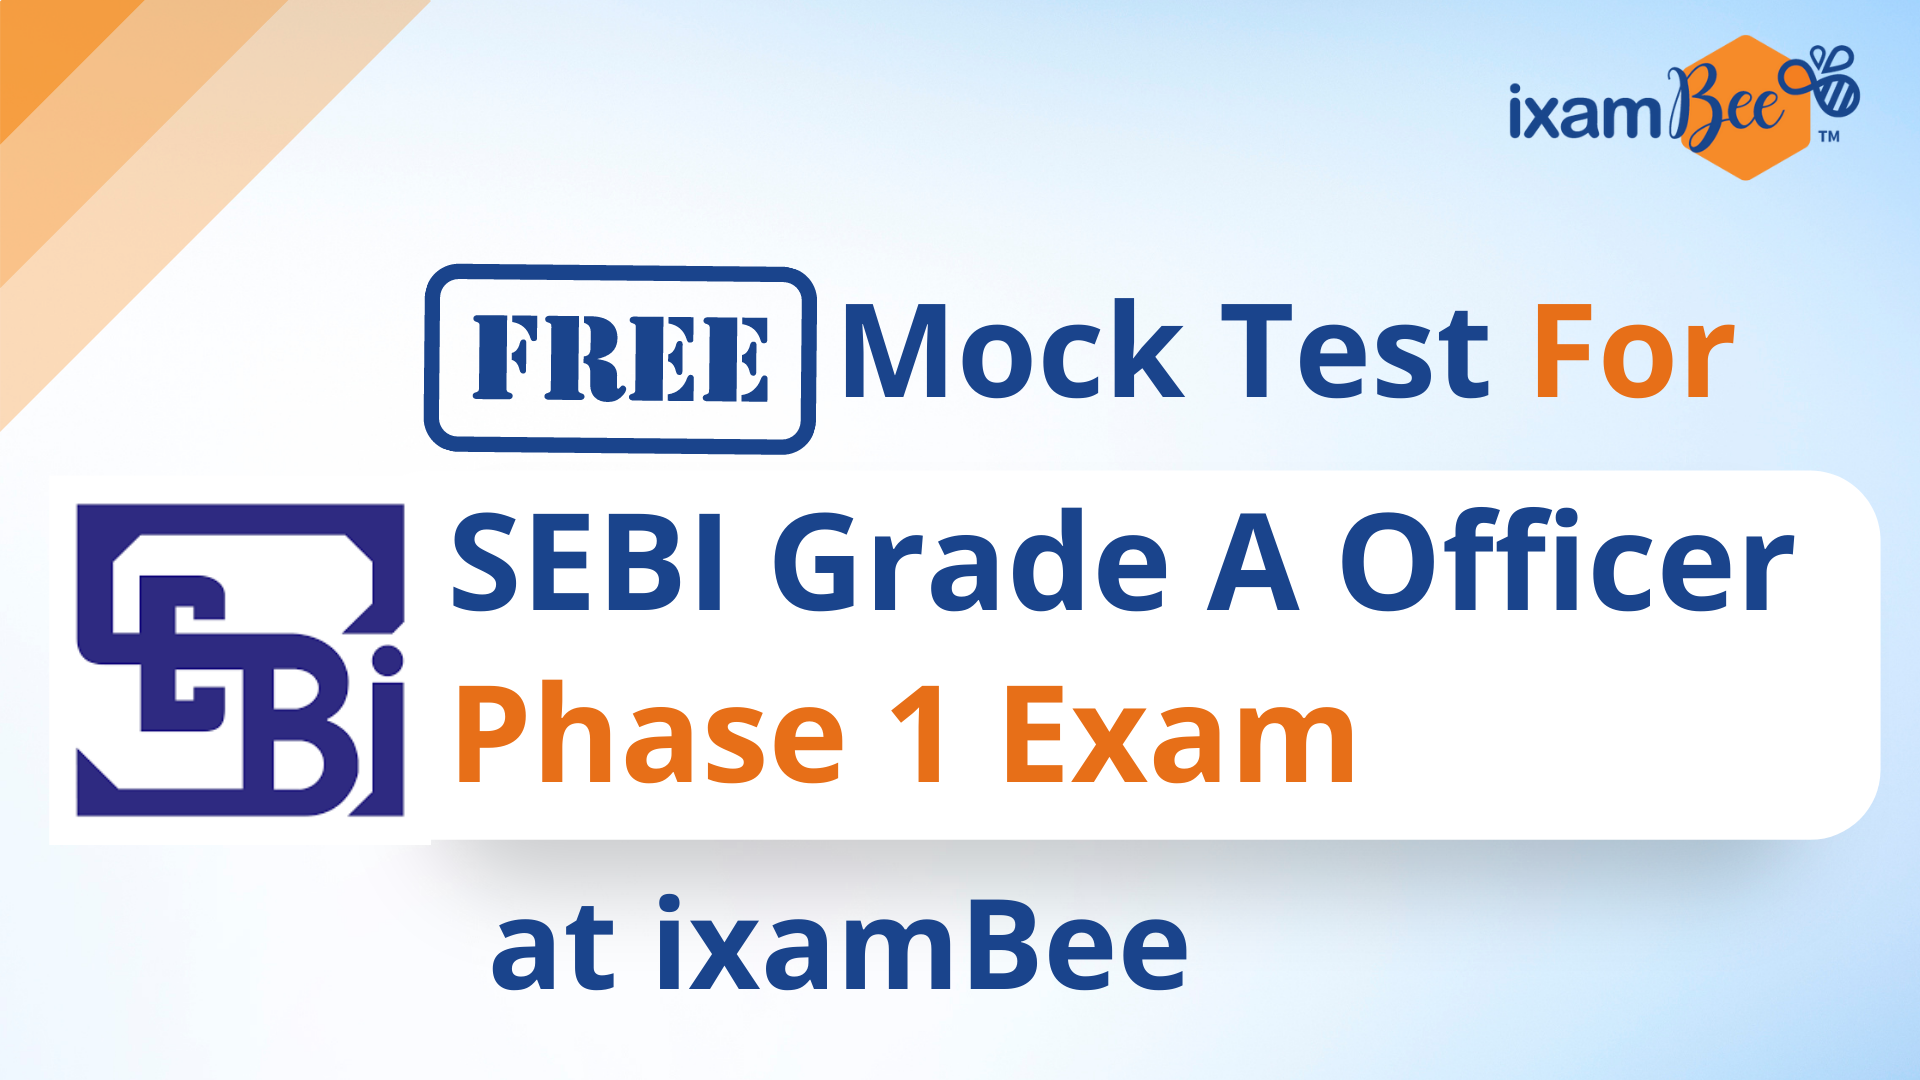 SEBI Grade A Mock Test 2022: Free Mock Test For SEBI Grade A Officer Phase 1 Exam